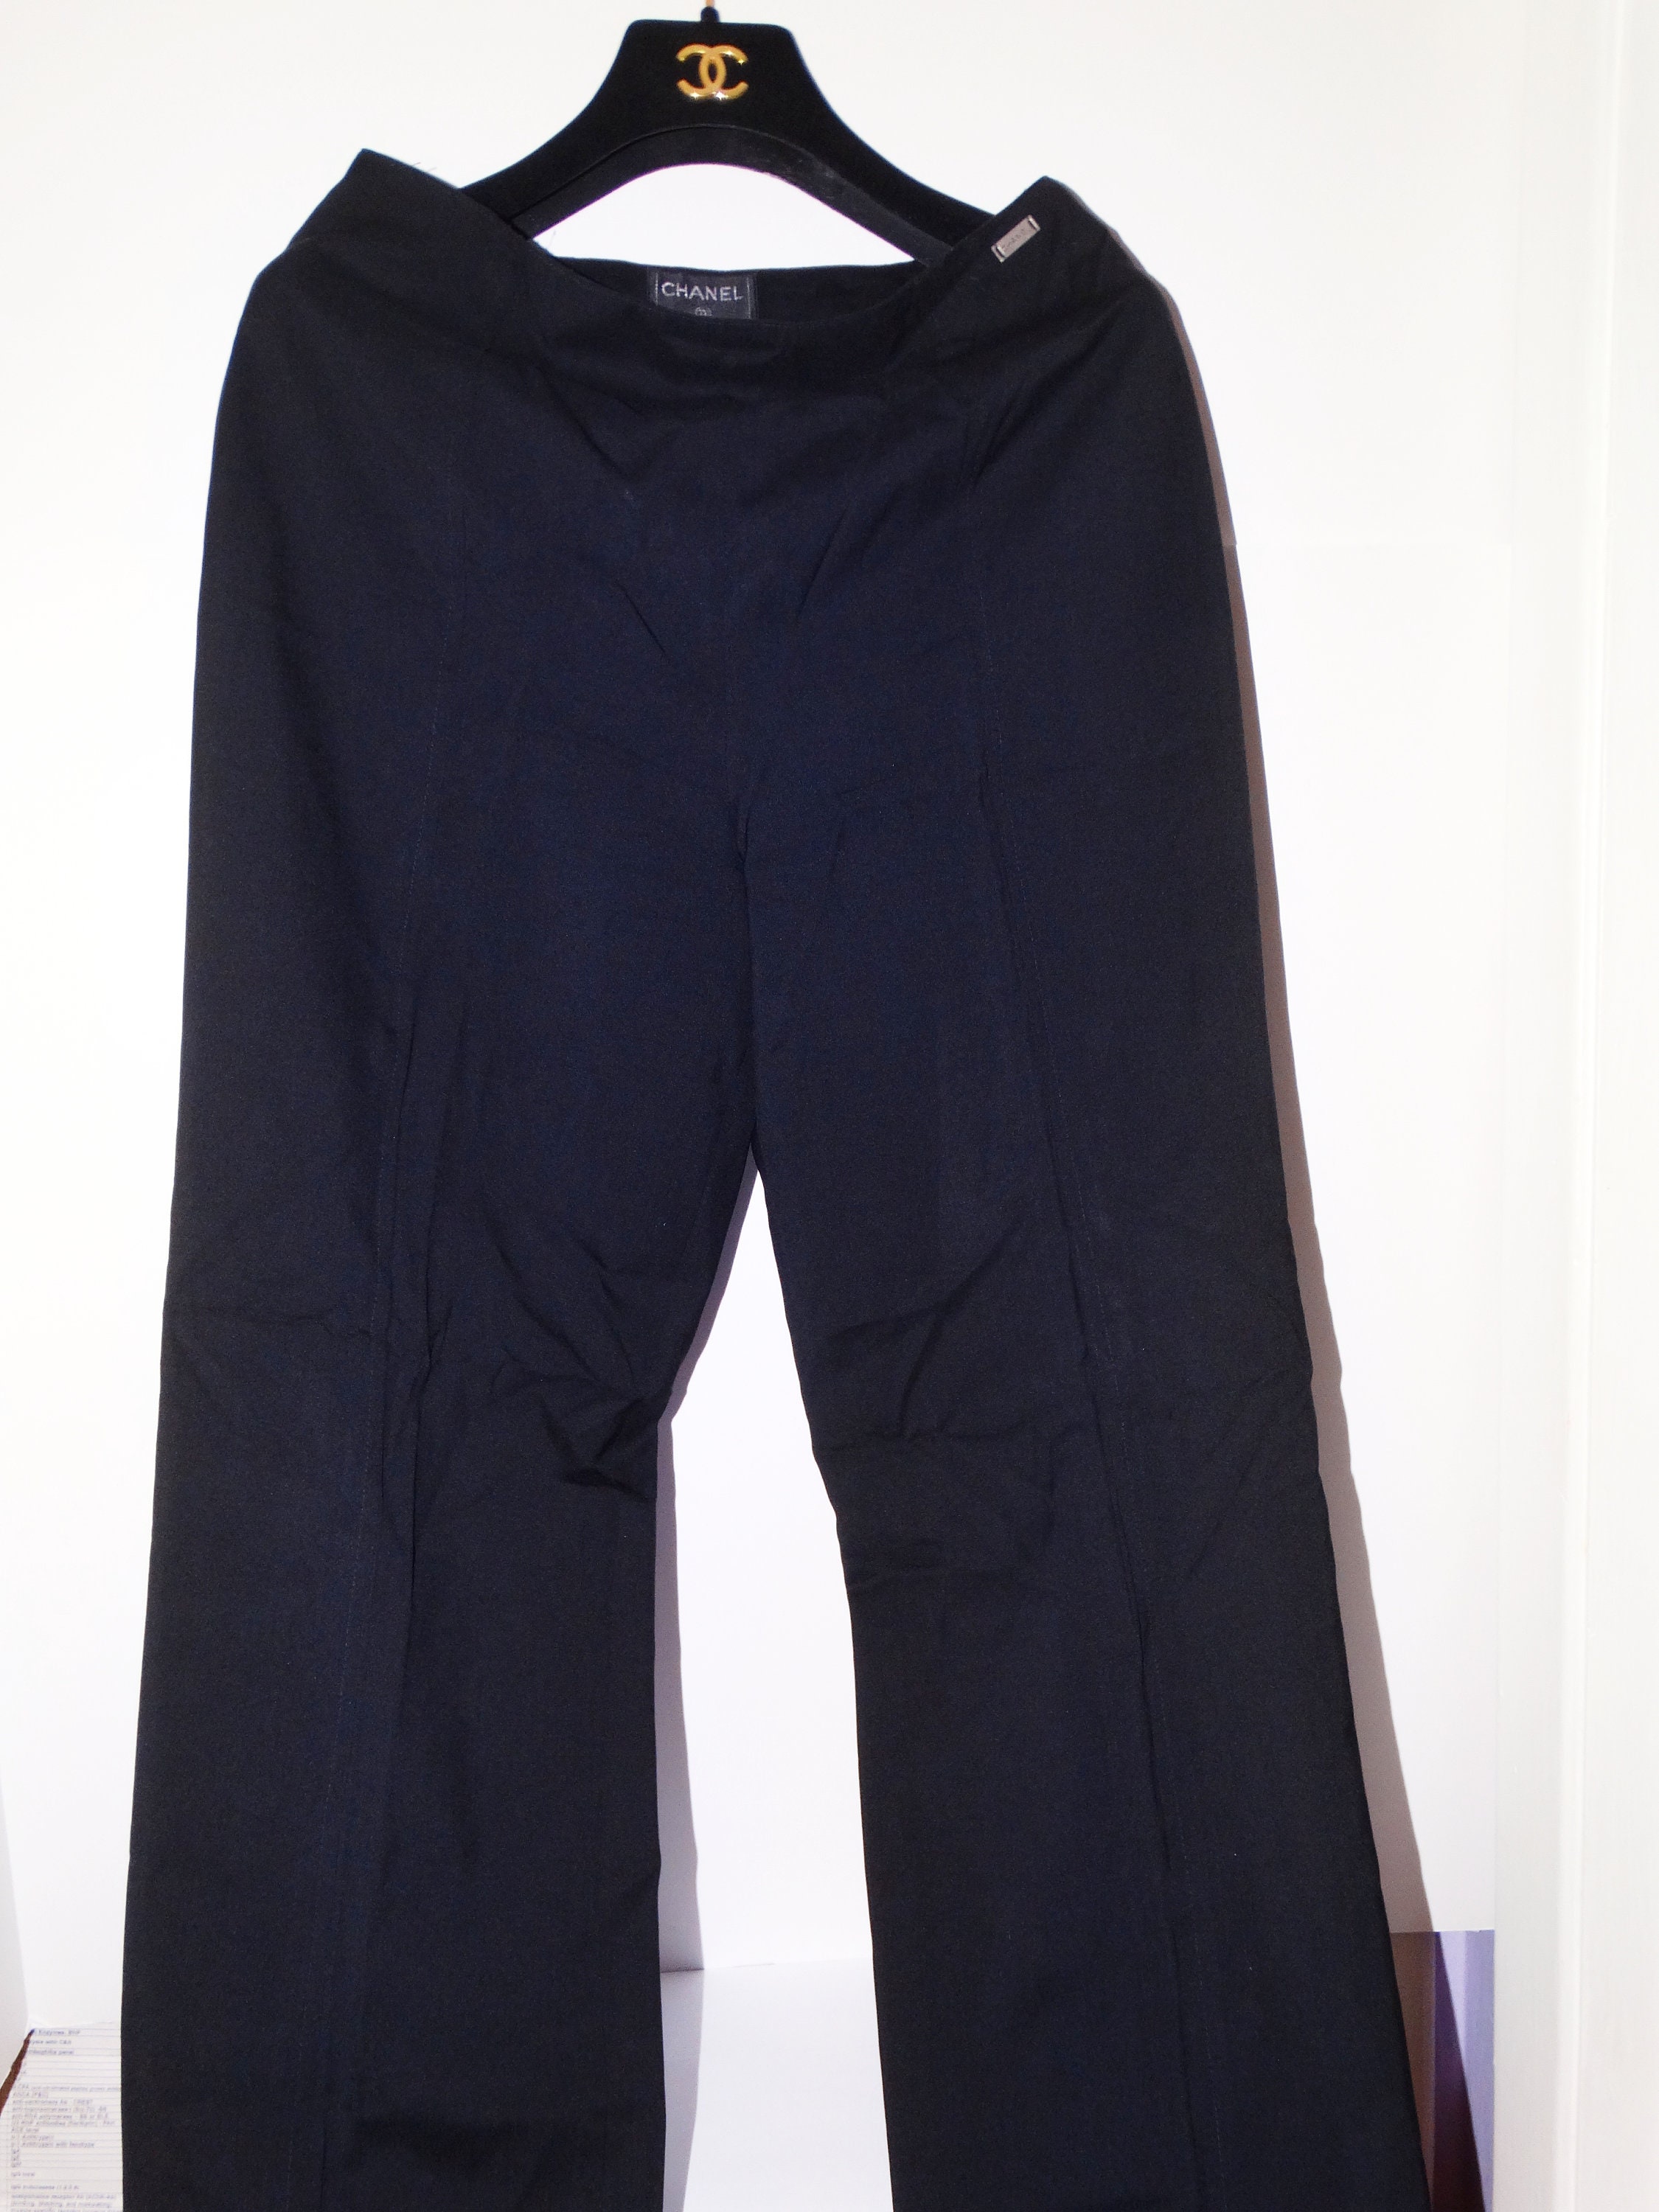 Women's Vintage Chanel Uniform Women’s Black Trousers Pants Size 40